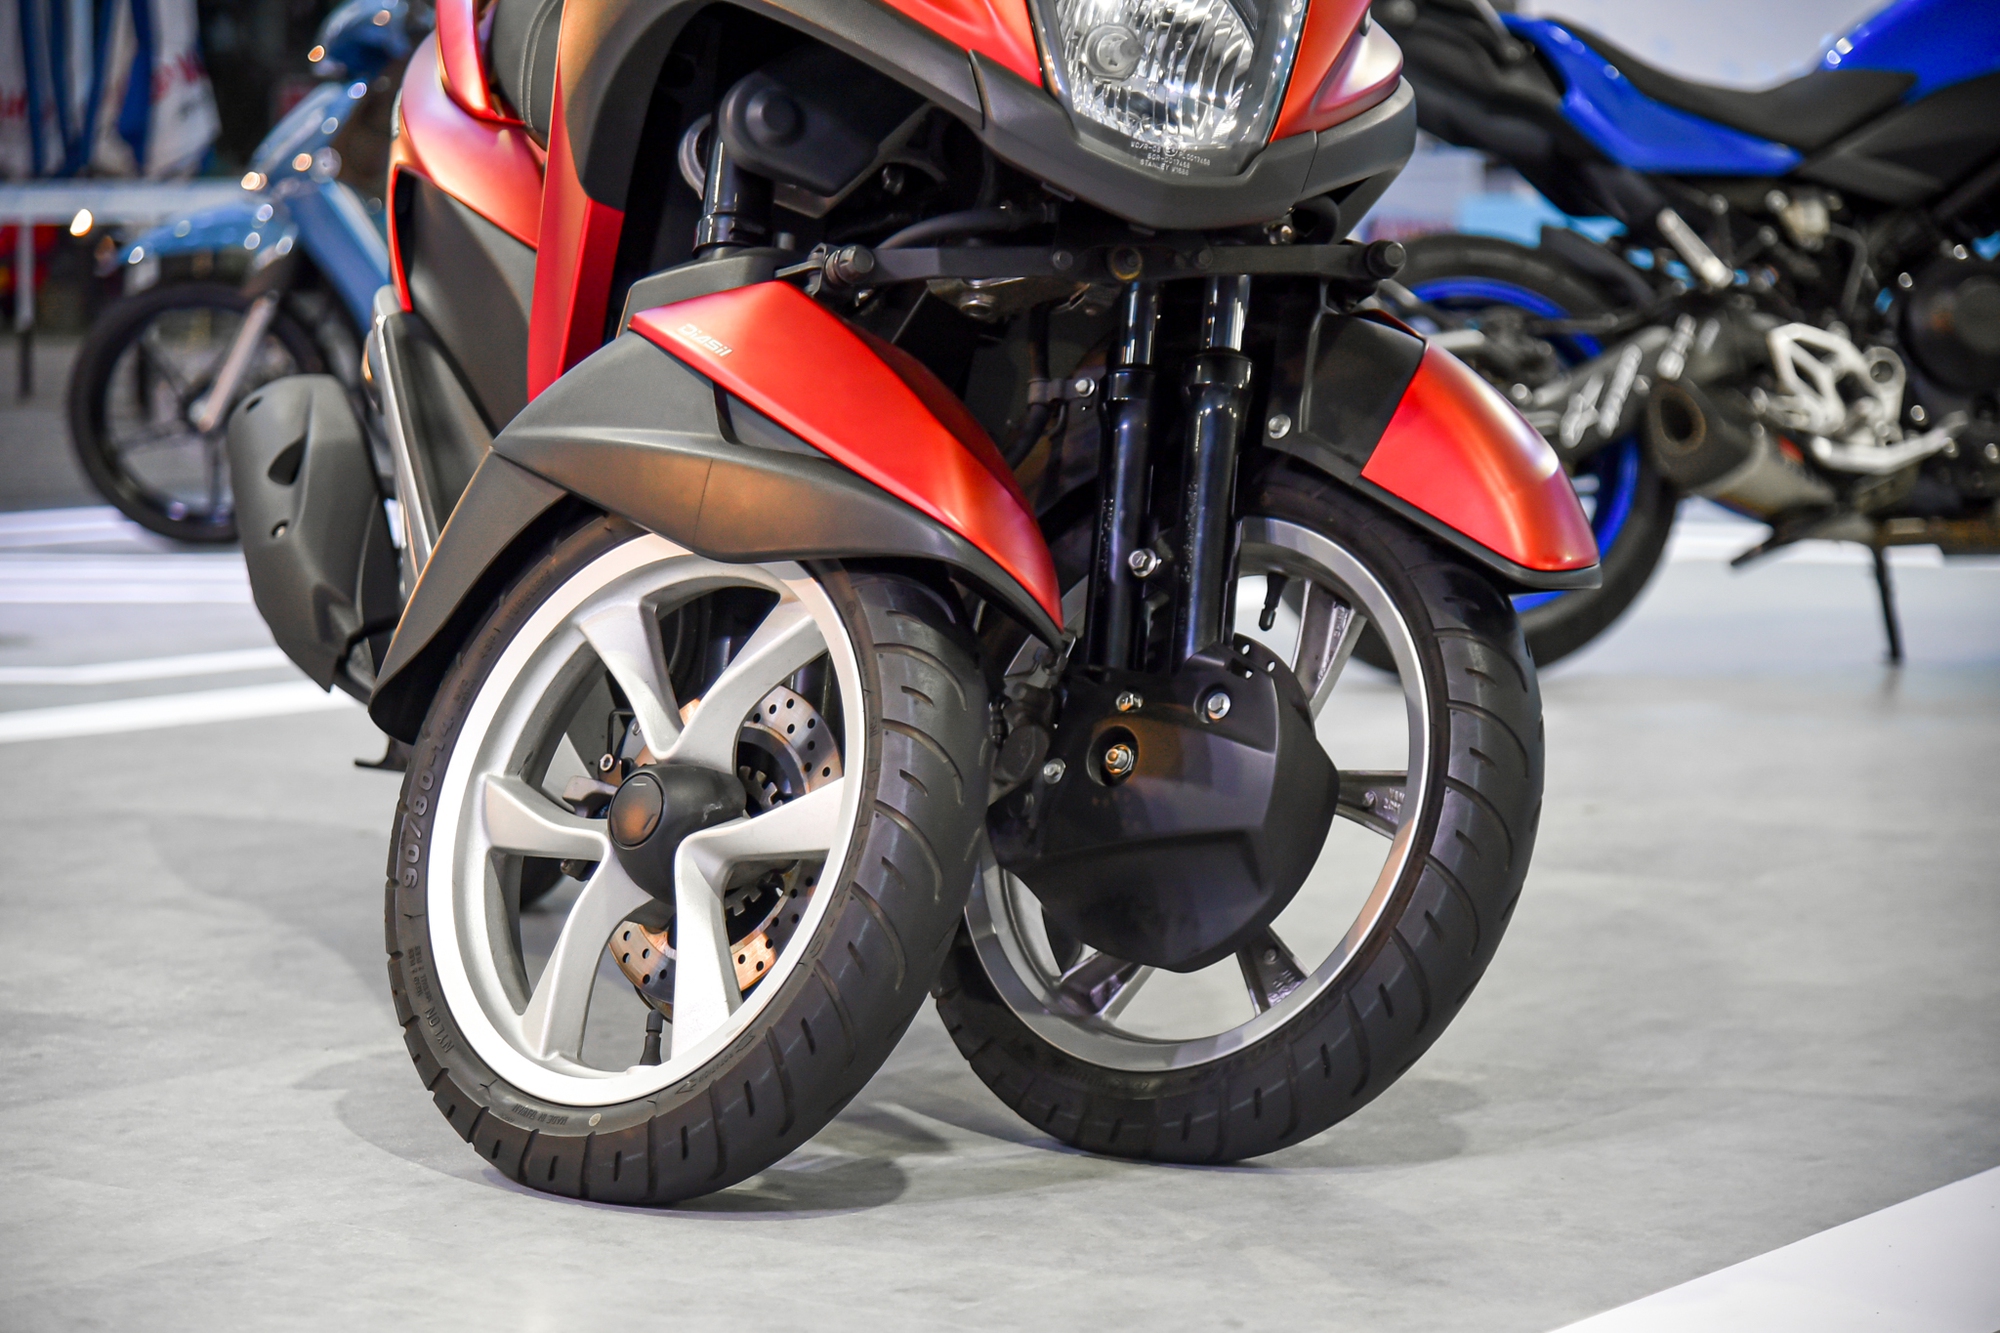 Chi tiết bộ đôi xe máy Yamaha 3 bánh cực dị tại Việt Nam - Ảnh 11.